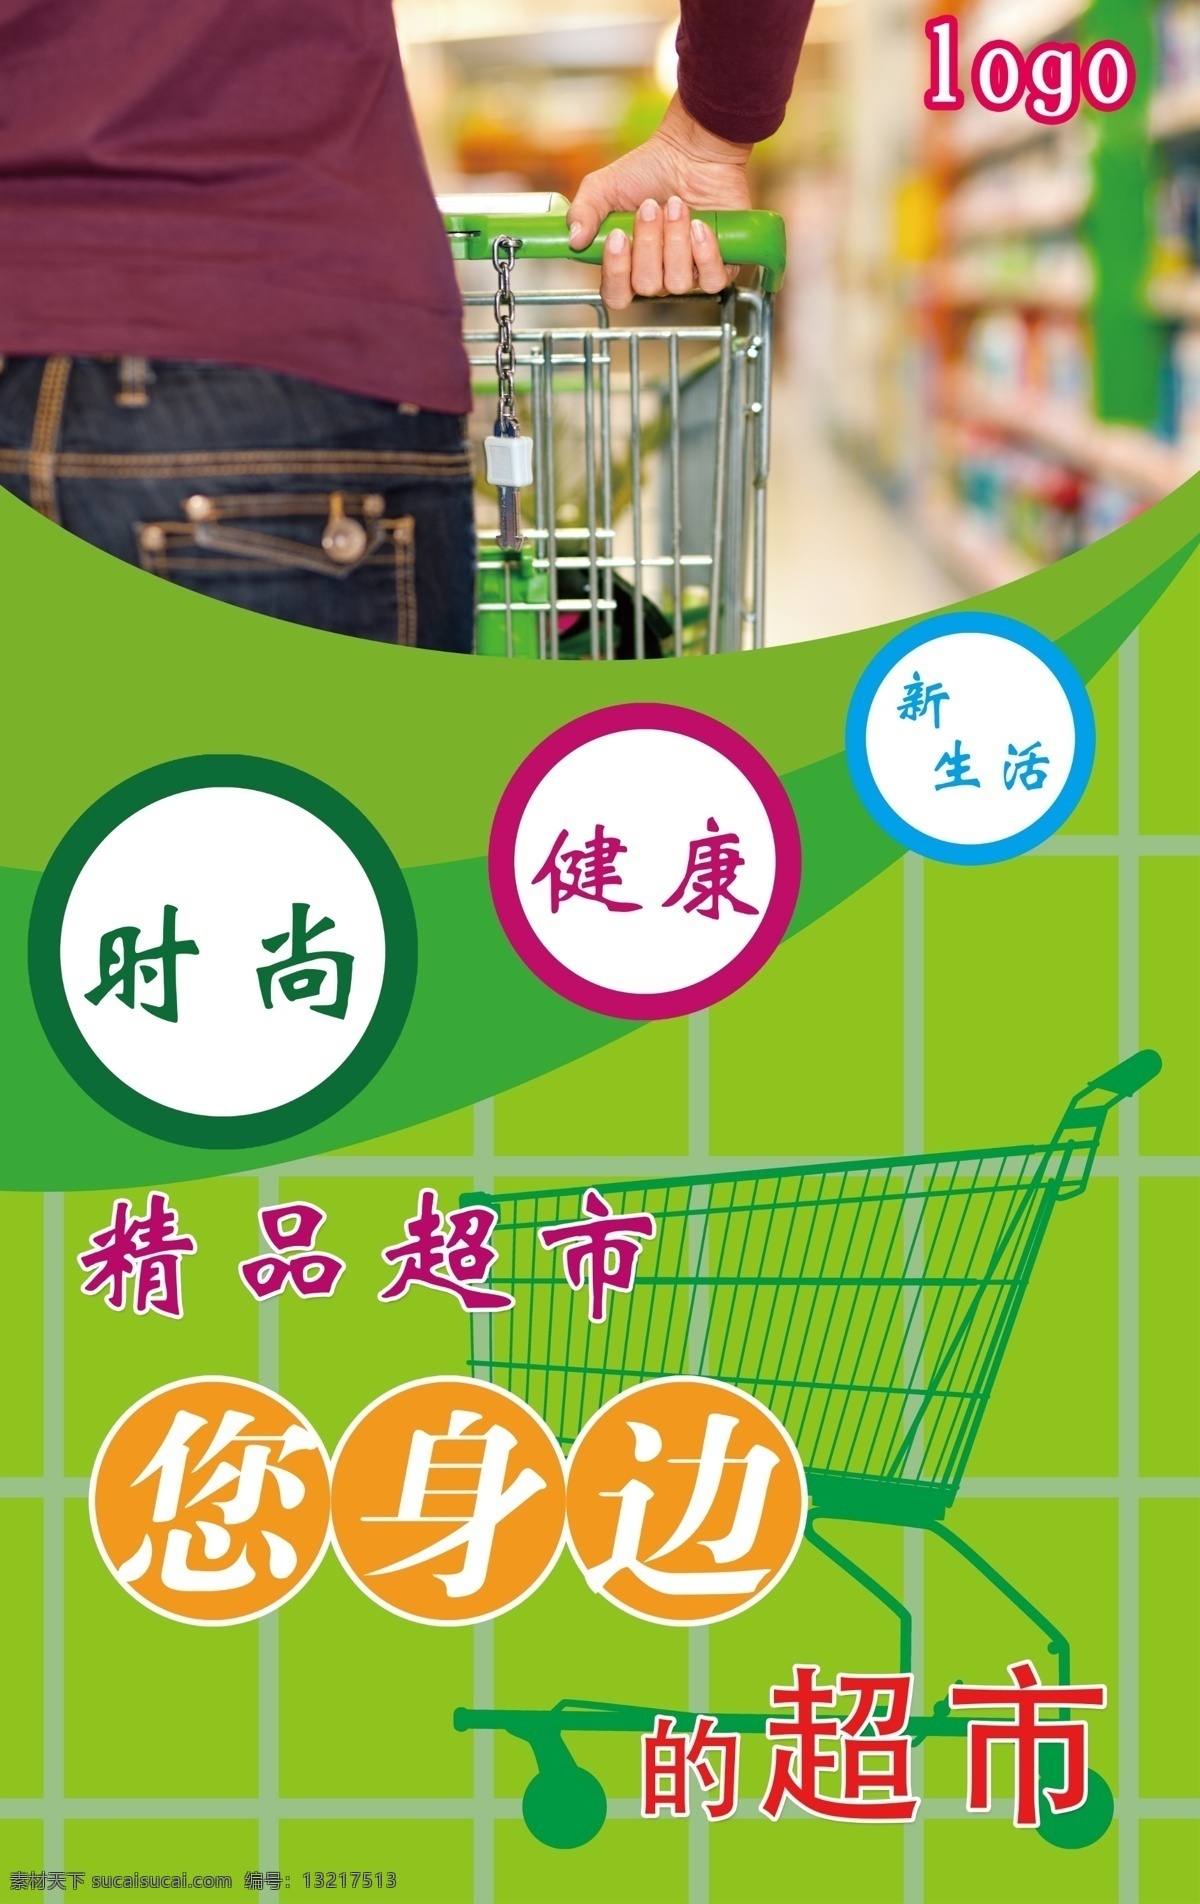 超市户外广告 时尚购物 精品超市 购物场景 购物车 绿色购物 广告设计模板 源文件